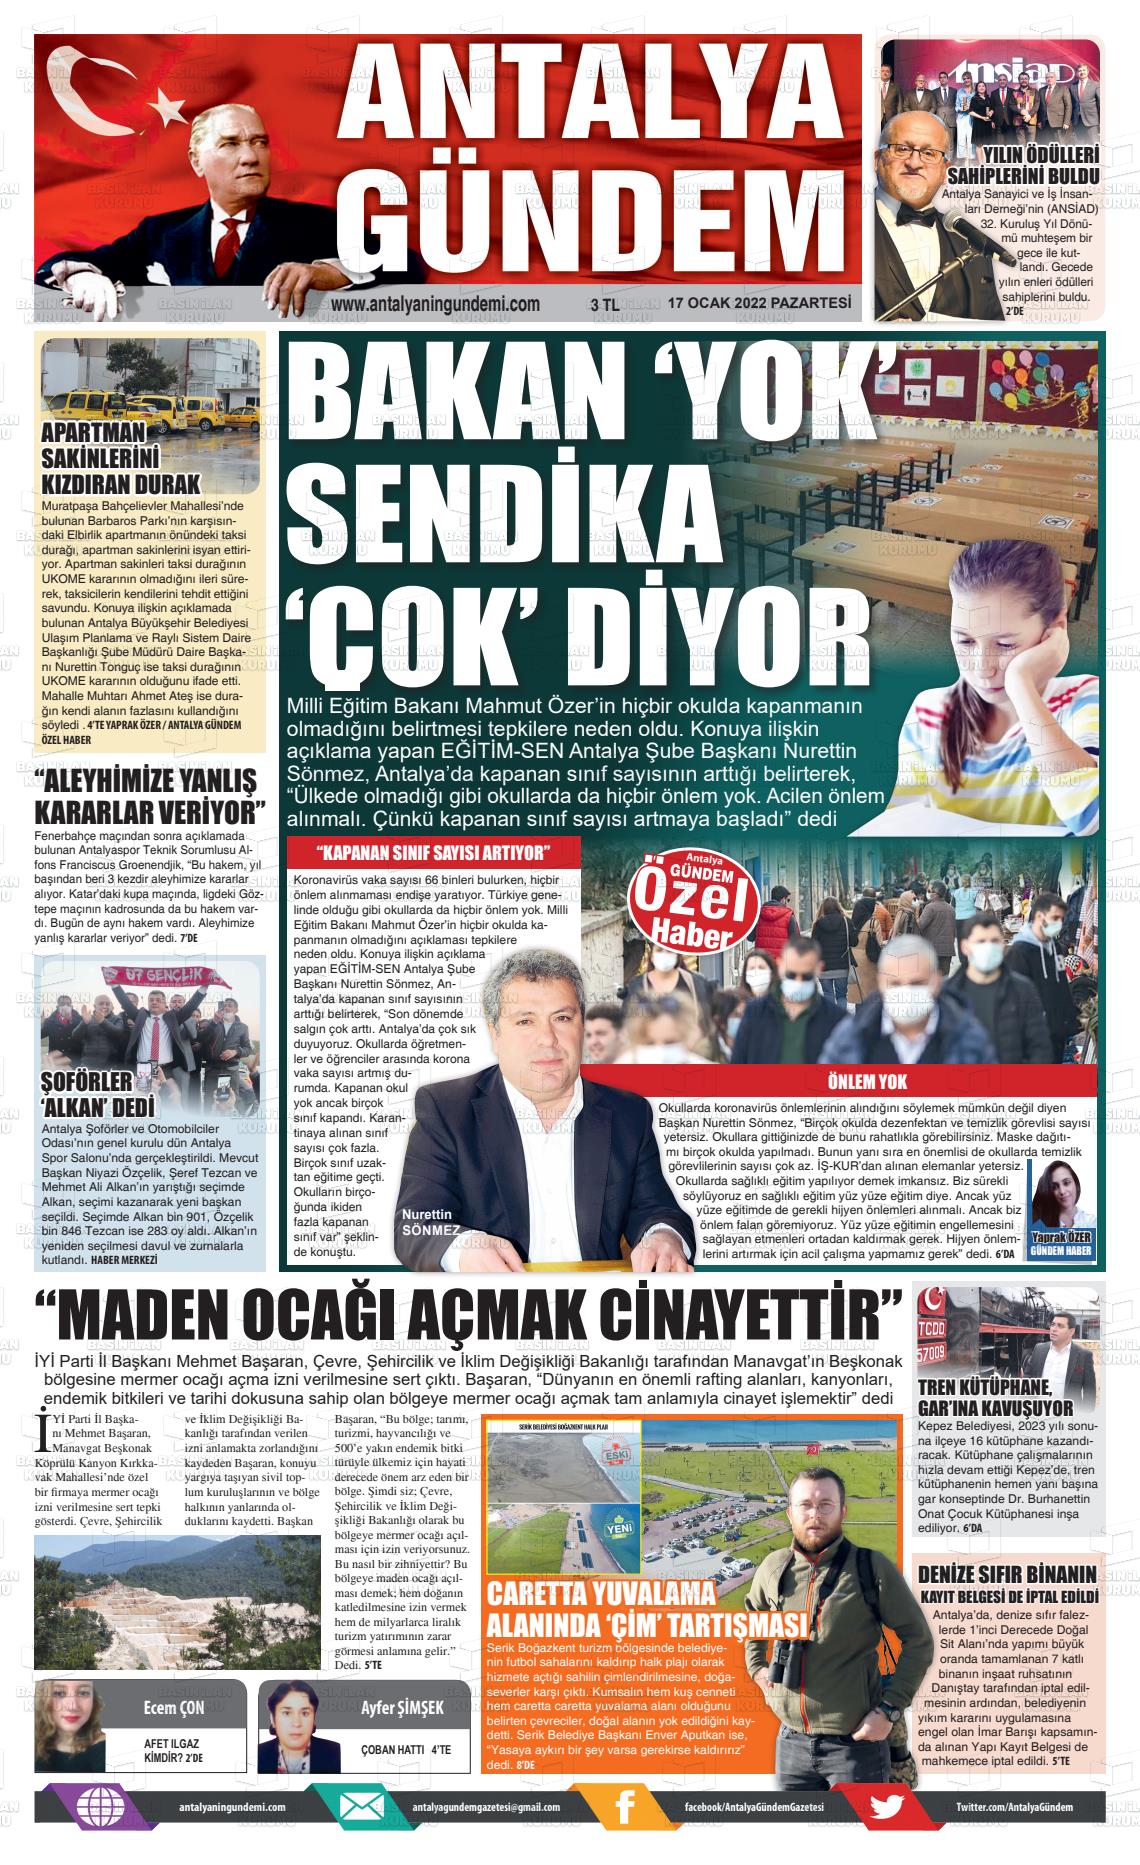 17 Ocak 2022 Antalya'nın Gündemi Gazete Manşeti